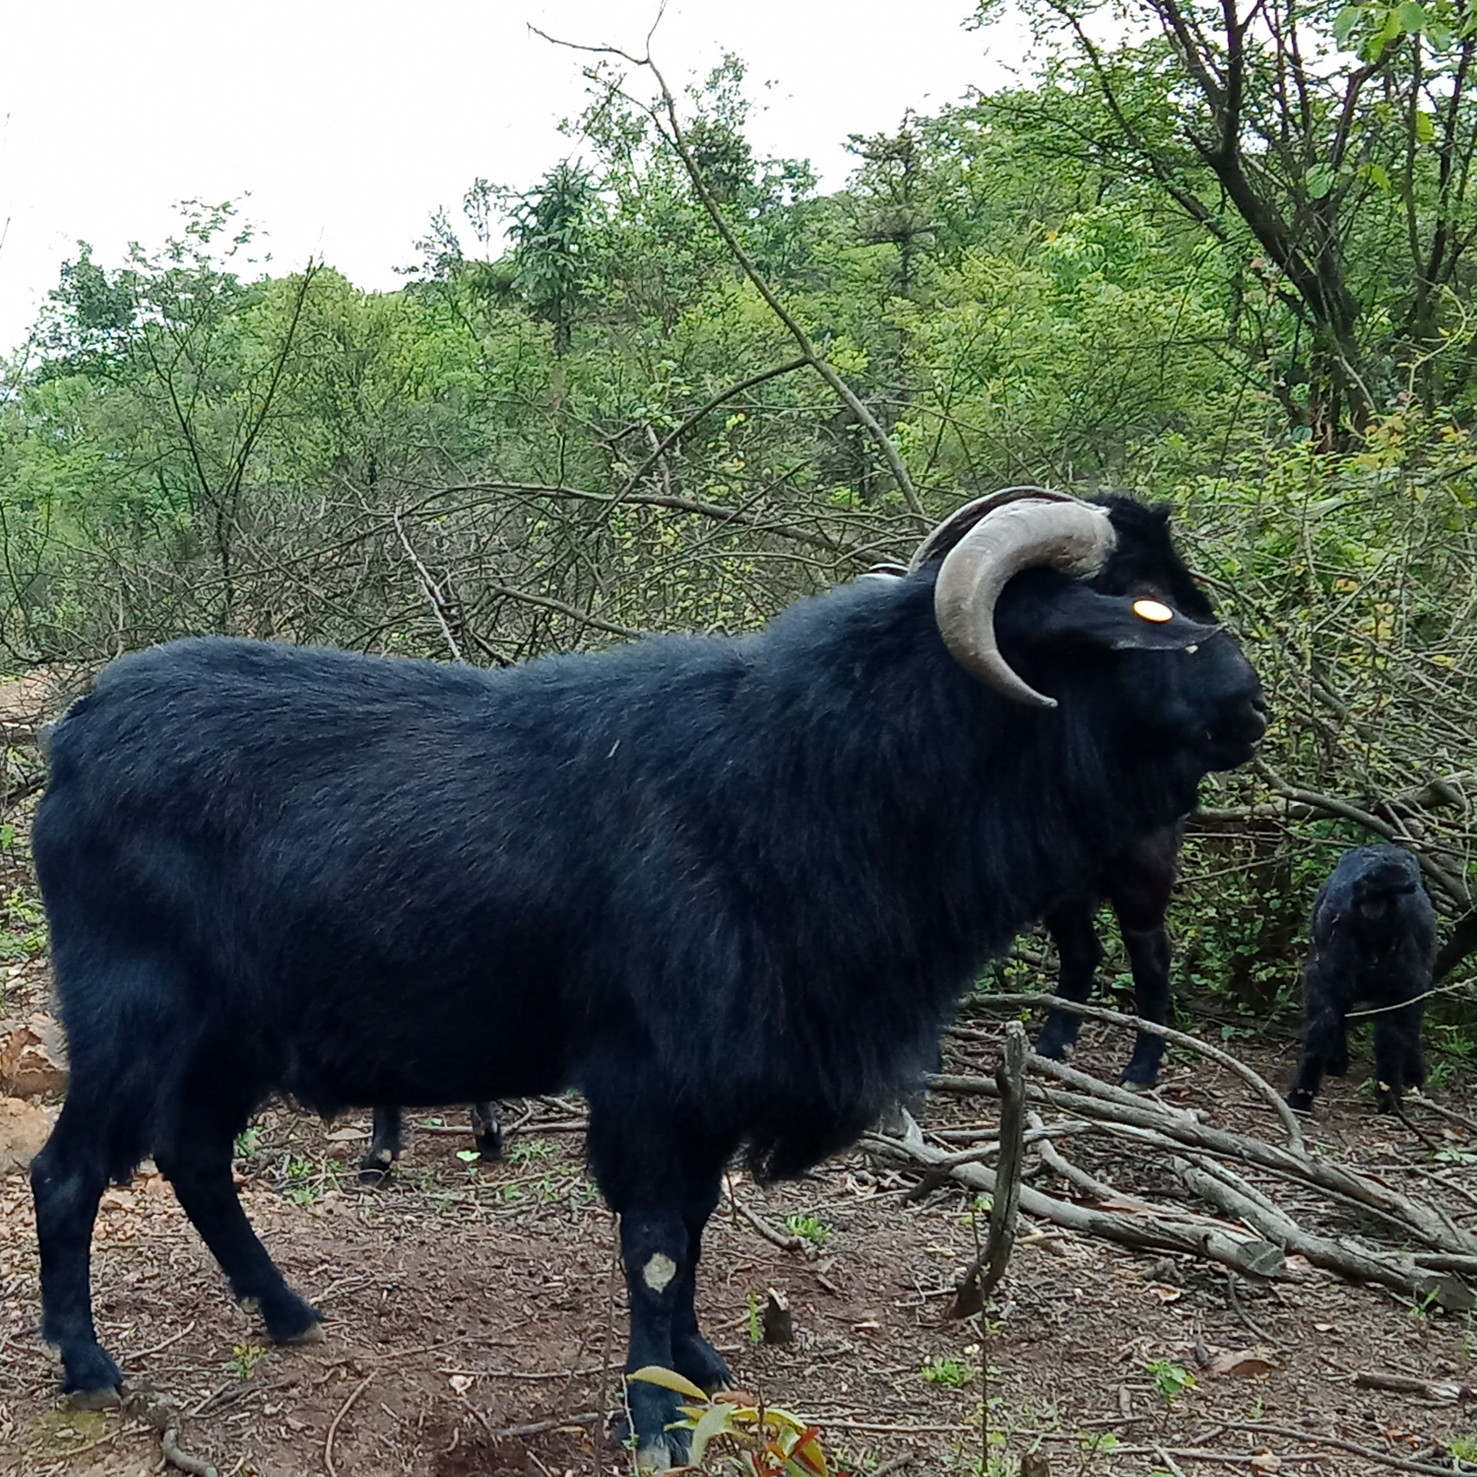 湘美黑山羊具有成熟早/生长快/繁殖能力突出等特性